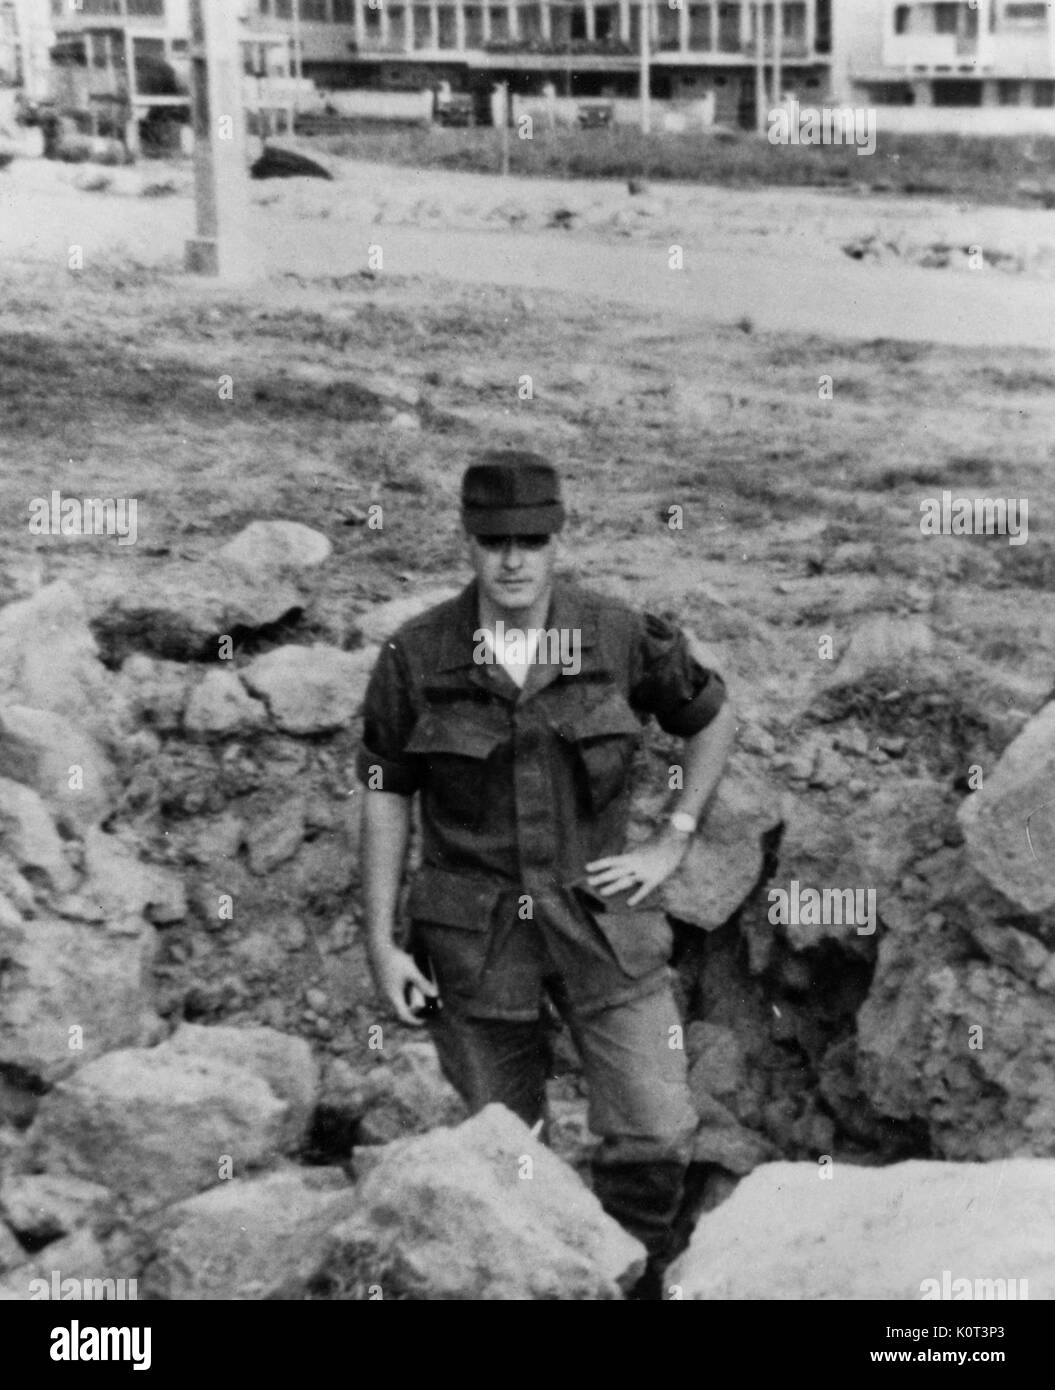 Marina Americana in piedi in un foro di fox, indossando uniforme militare, con un cappuccio di oscurare il suo volto, con una mano sulla sua anca, vicino a una strada sterrata in Vietnam durante la Guerra del Vietnam, 1965. Foto Stock